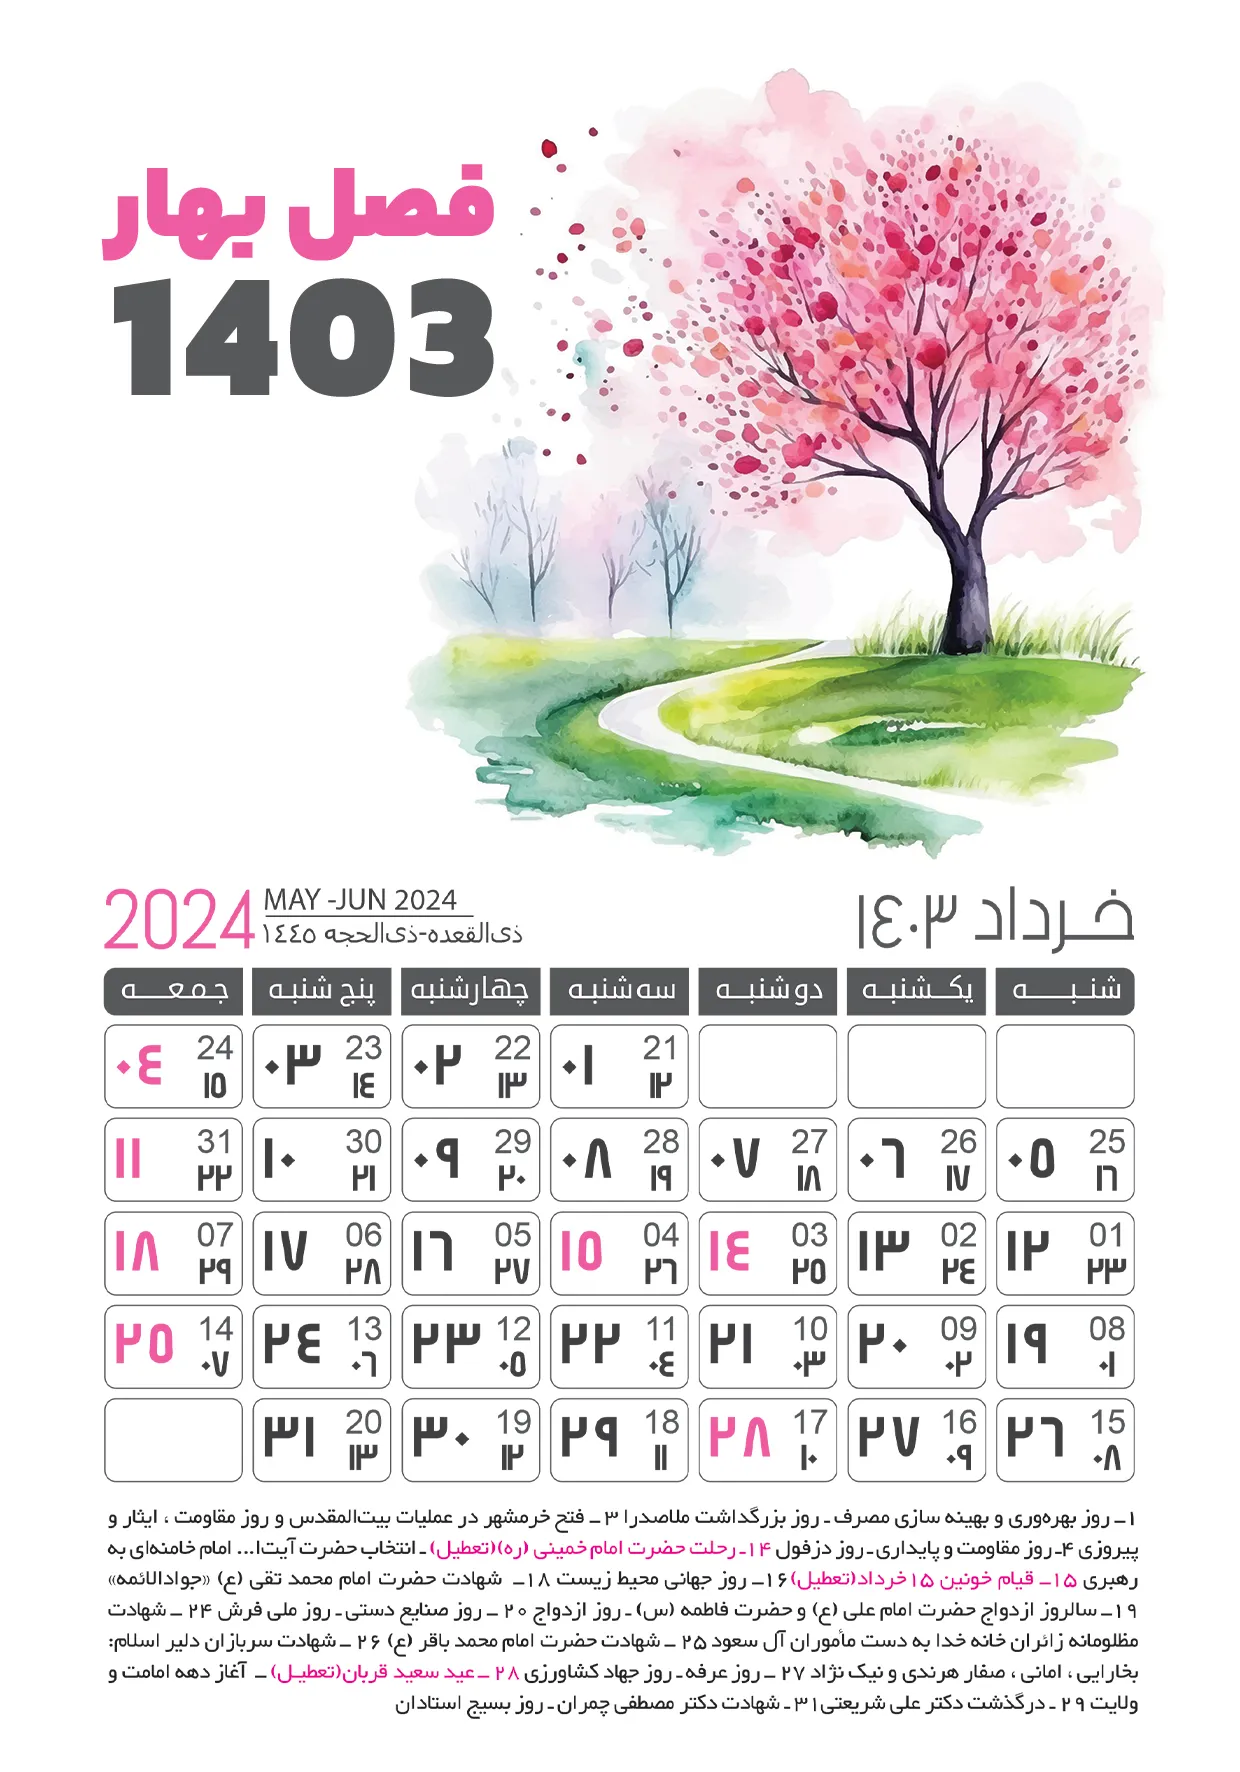 دانلود تقویم 1403 خرداد ماه (فصل بهار)